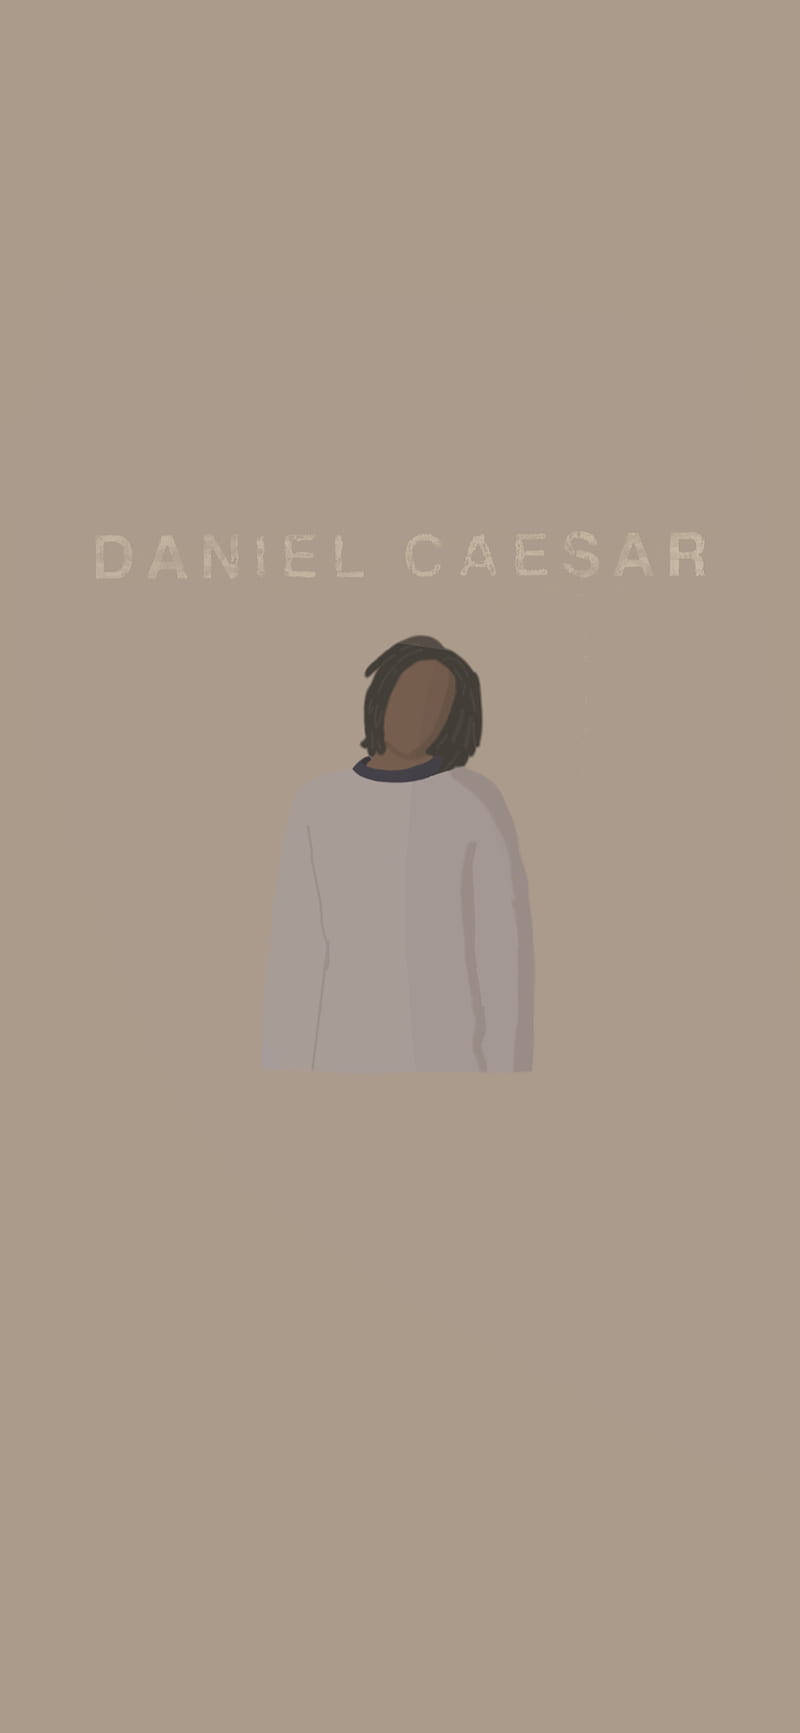 Daniel Caesar Minimalist Art